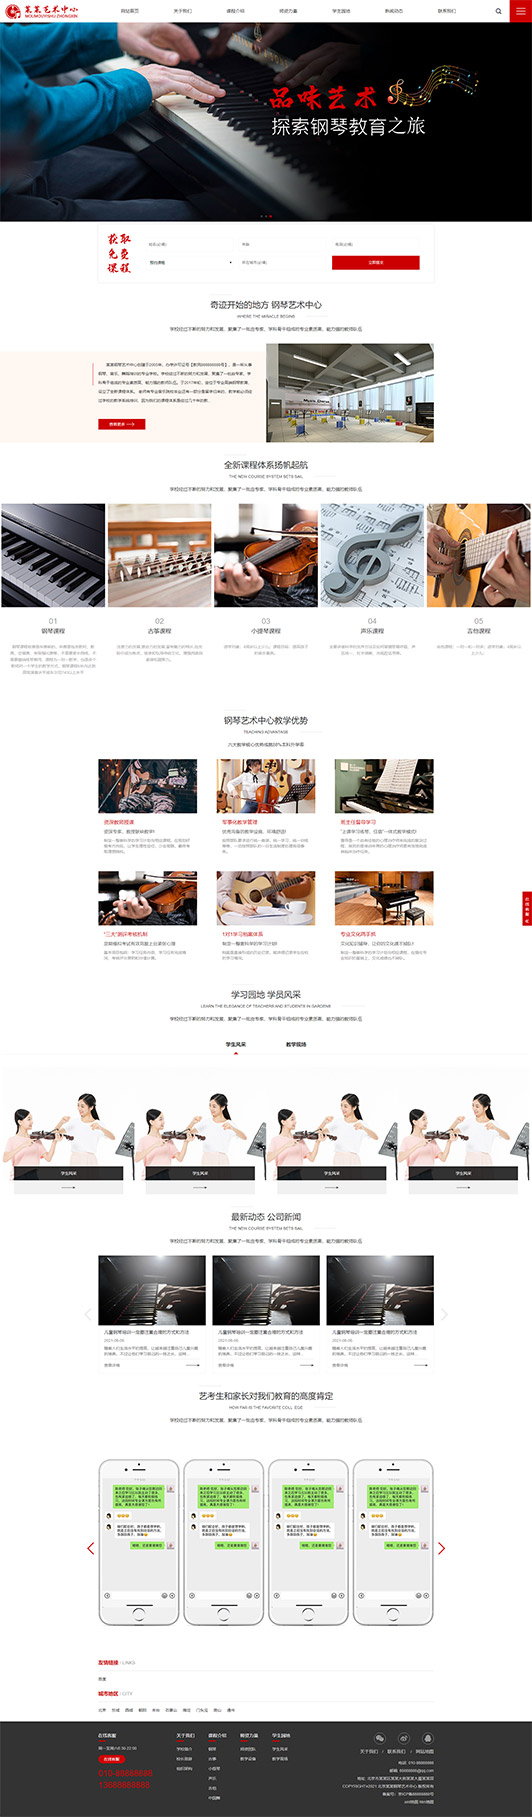 四平钢琴艺术培训公司响应式企业网站